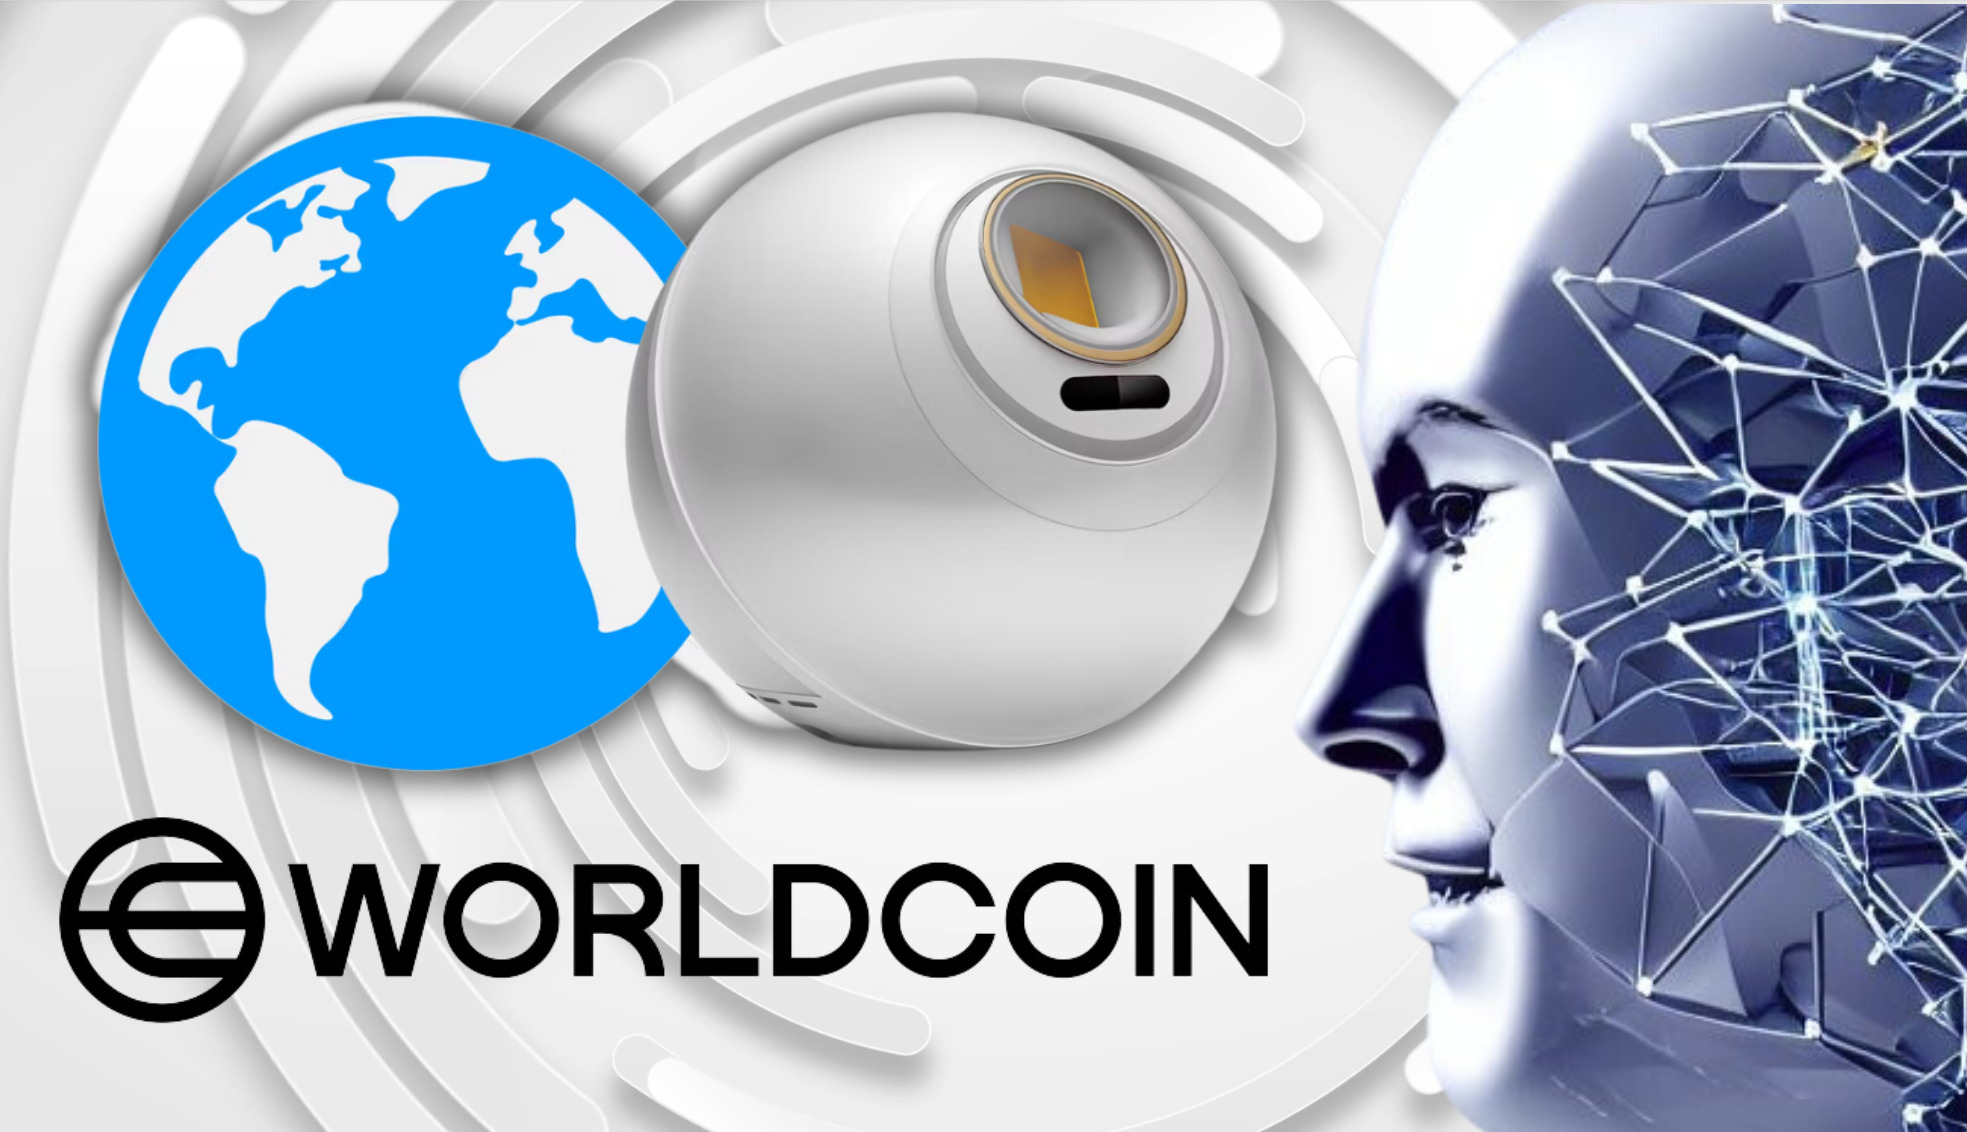 Mauvaise nouvelle pour Worldcoin : l’Argentine ouvre une enquête sur l’entreprise crypto